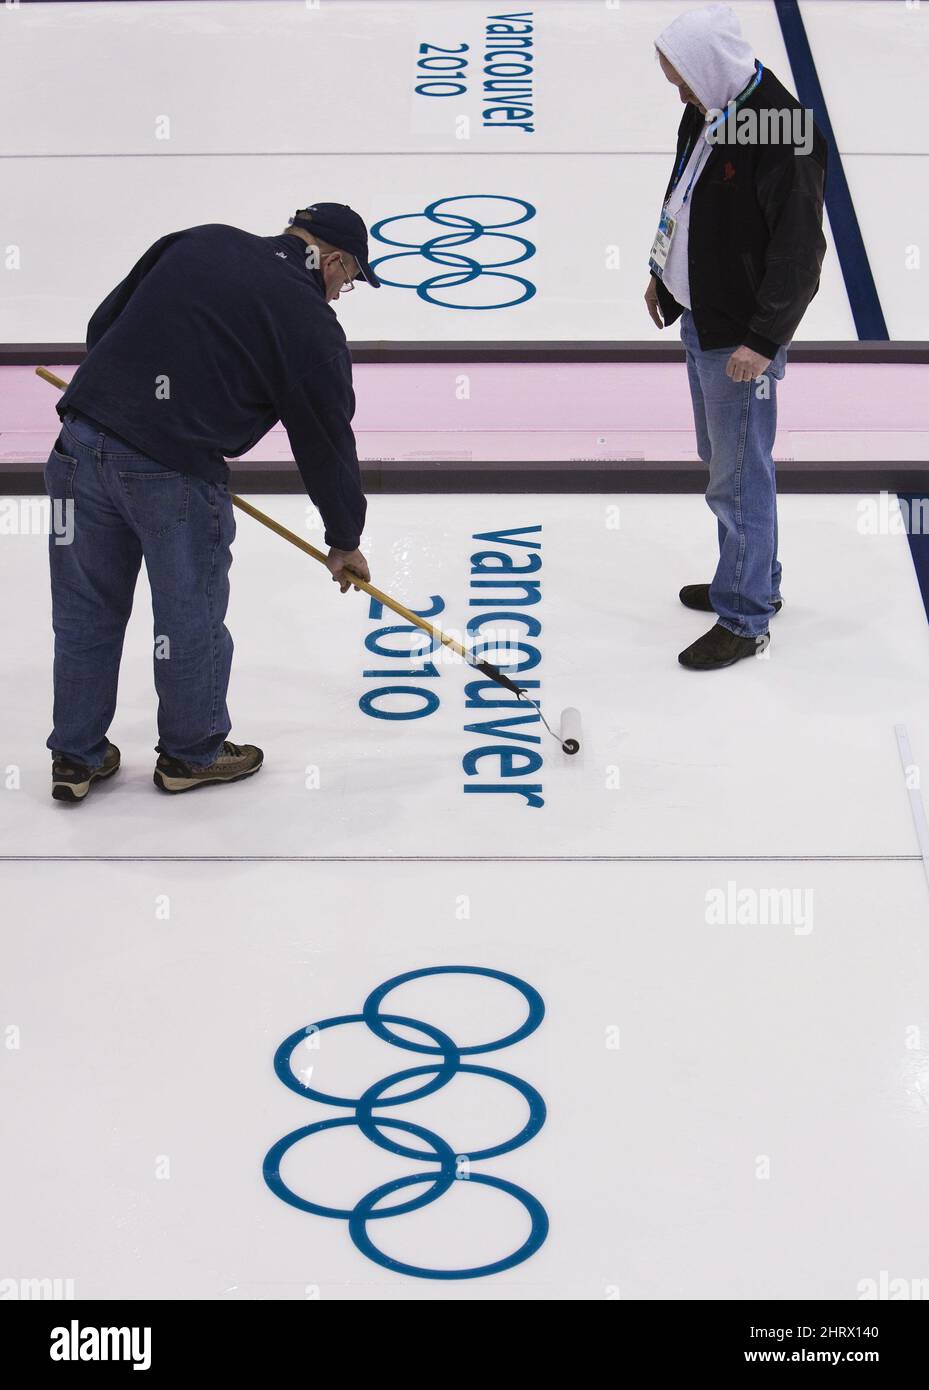 Les travailleurs de la glace roulent sur l'eau au-dessus des emblèmes des Jeux olympiques d'hiver au Centre olympique de Vancouver, où le curling aura lieu le mardi 9 février 2010 aux Jeux olympiques d'hiver de 2010 à Vancouver. LA PRESSE CANADIENNE/Nathan Denette Banque D'Images